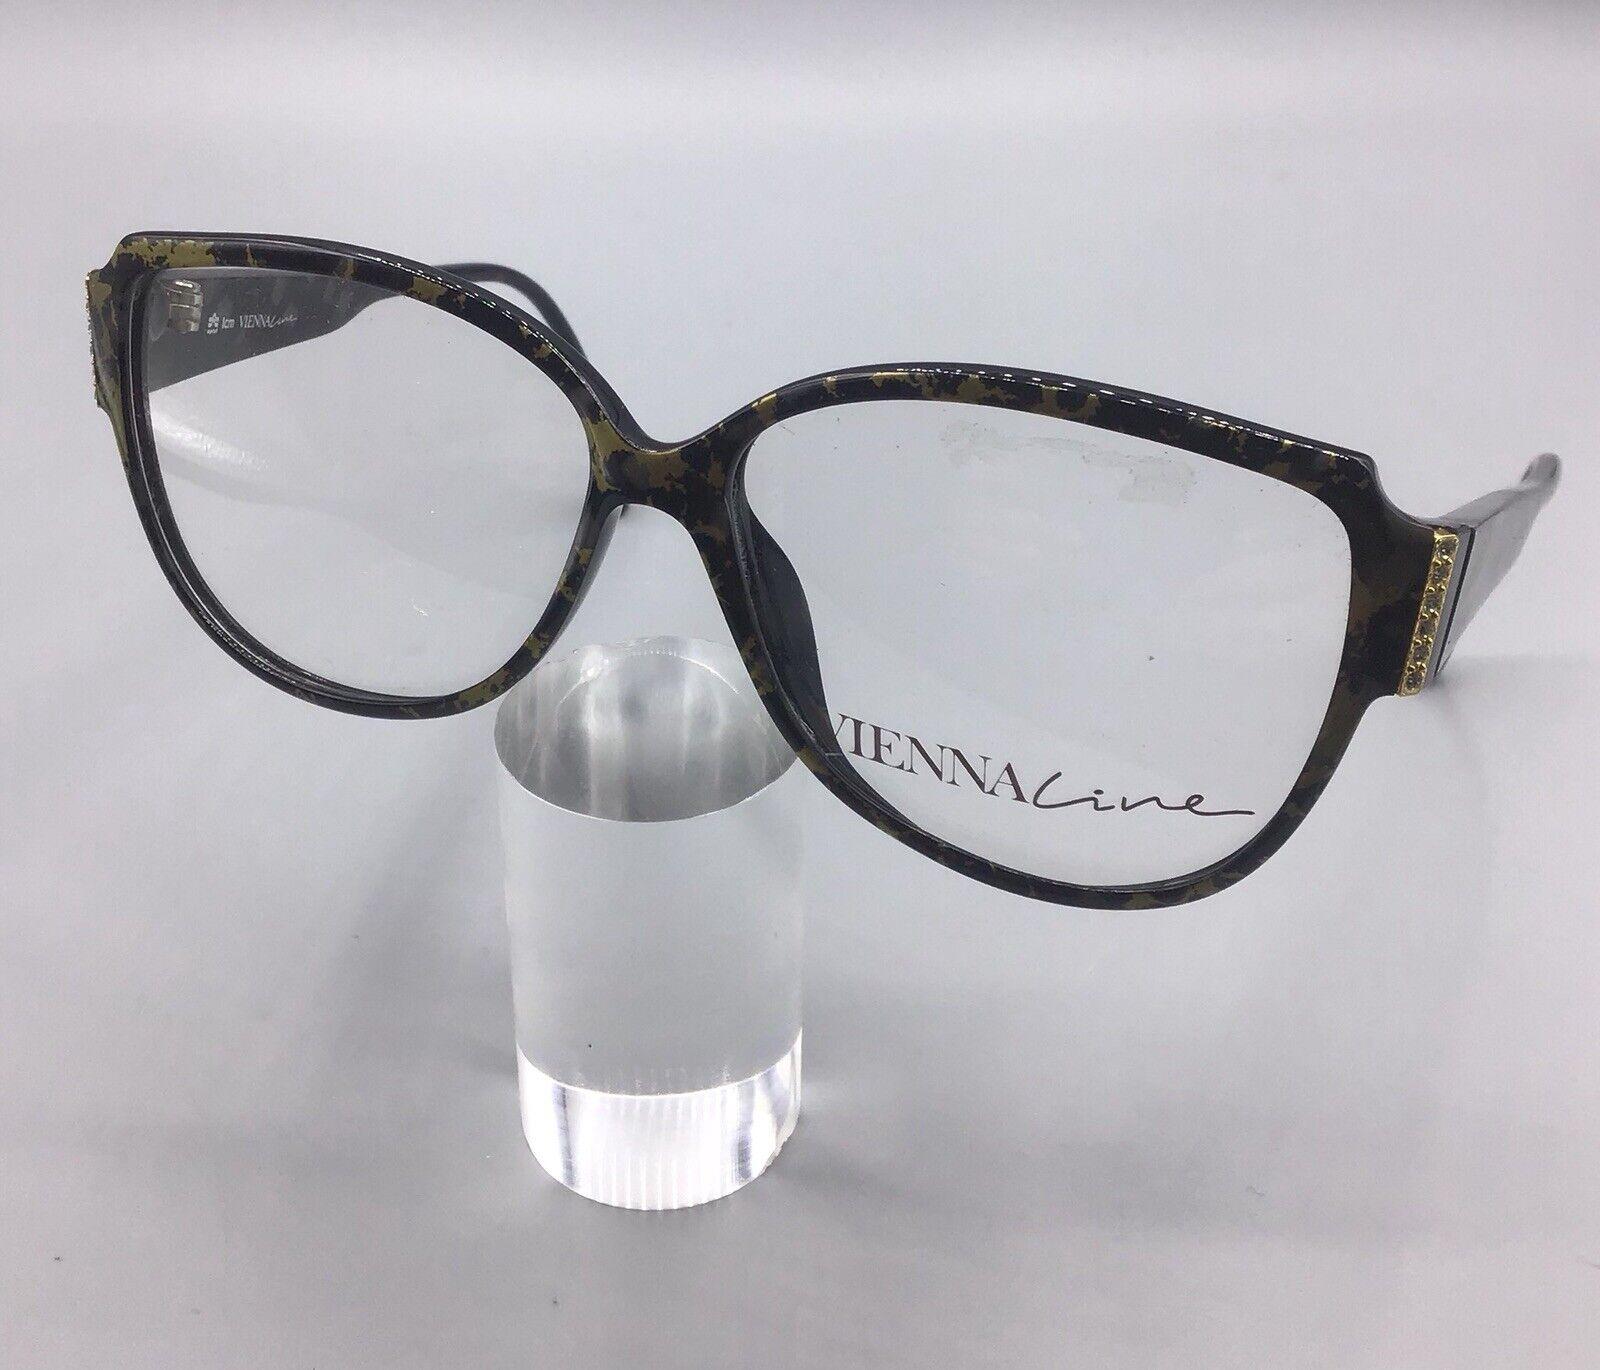 ViennaLine occhiale vintage made Austria 1527 90 brillen lunettes